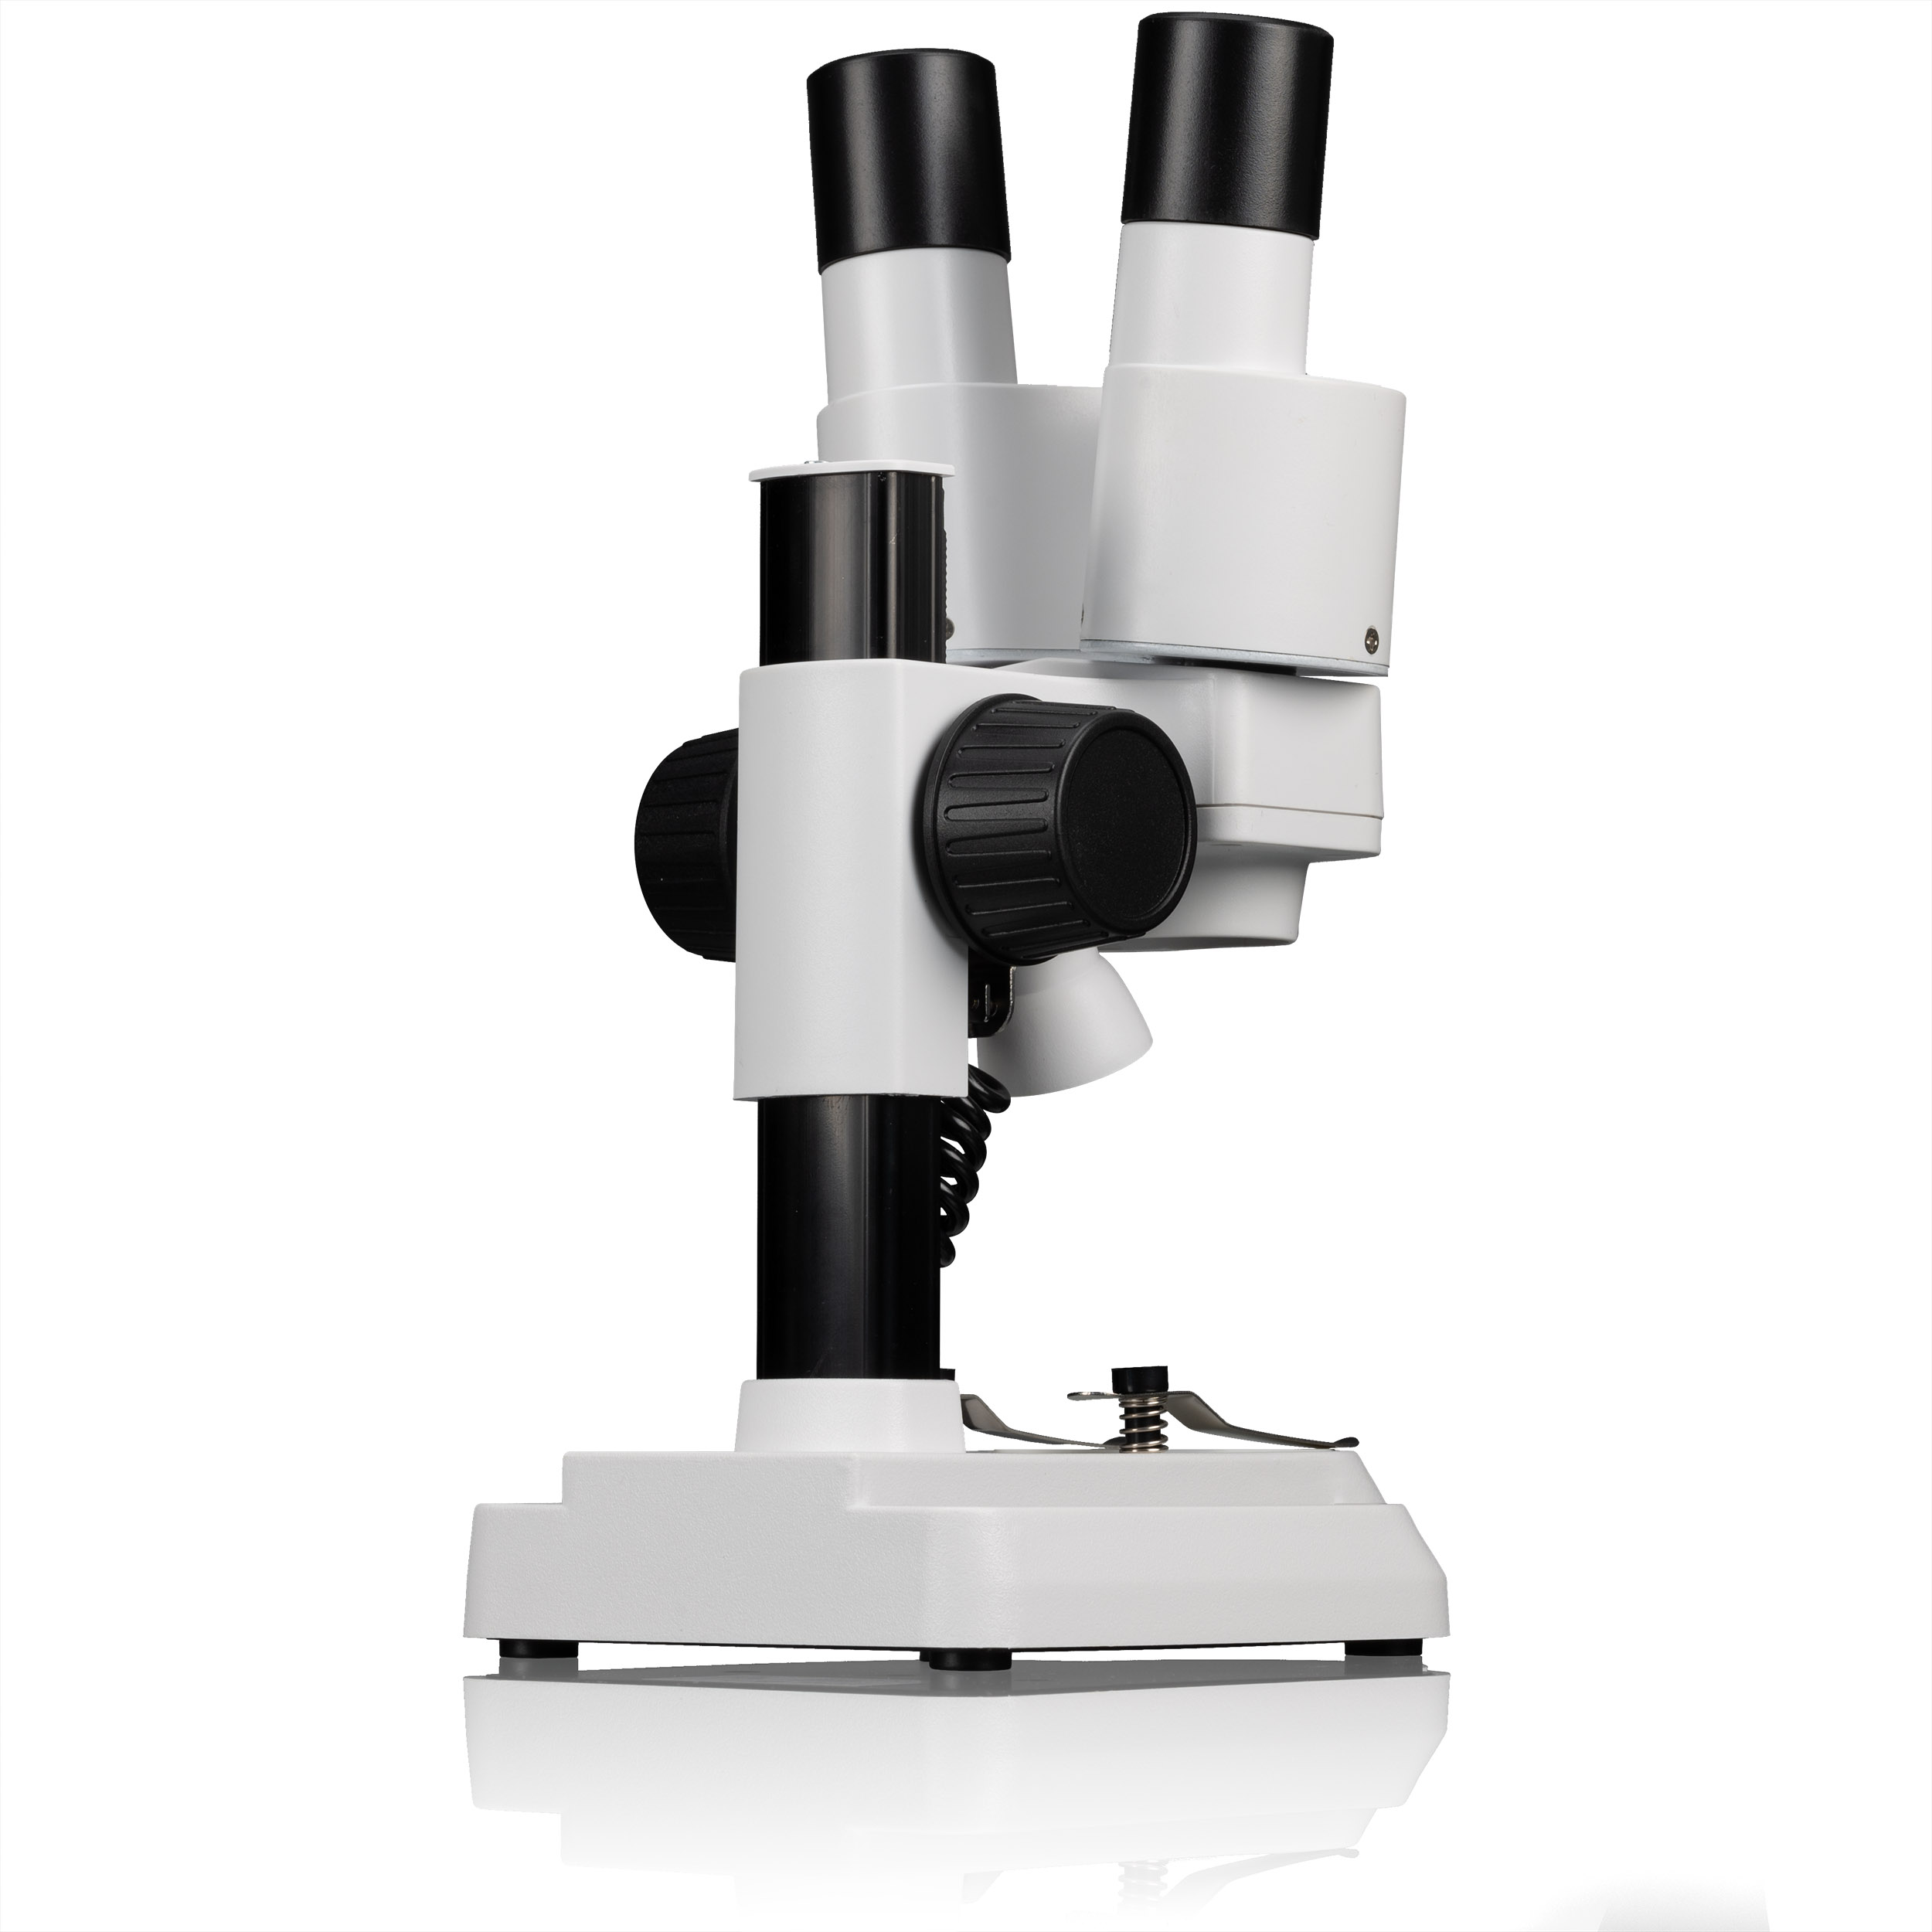 BRESSER JUNIOR 20x Stereo Microscopio